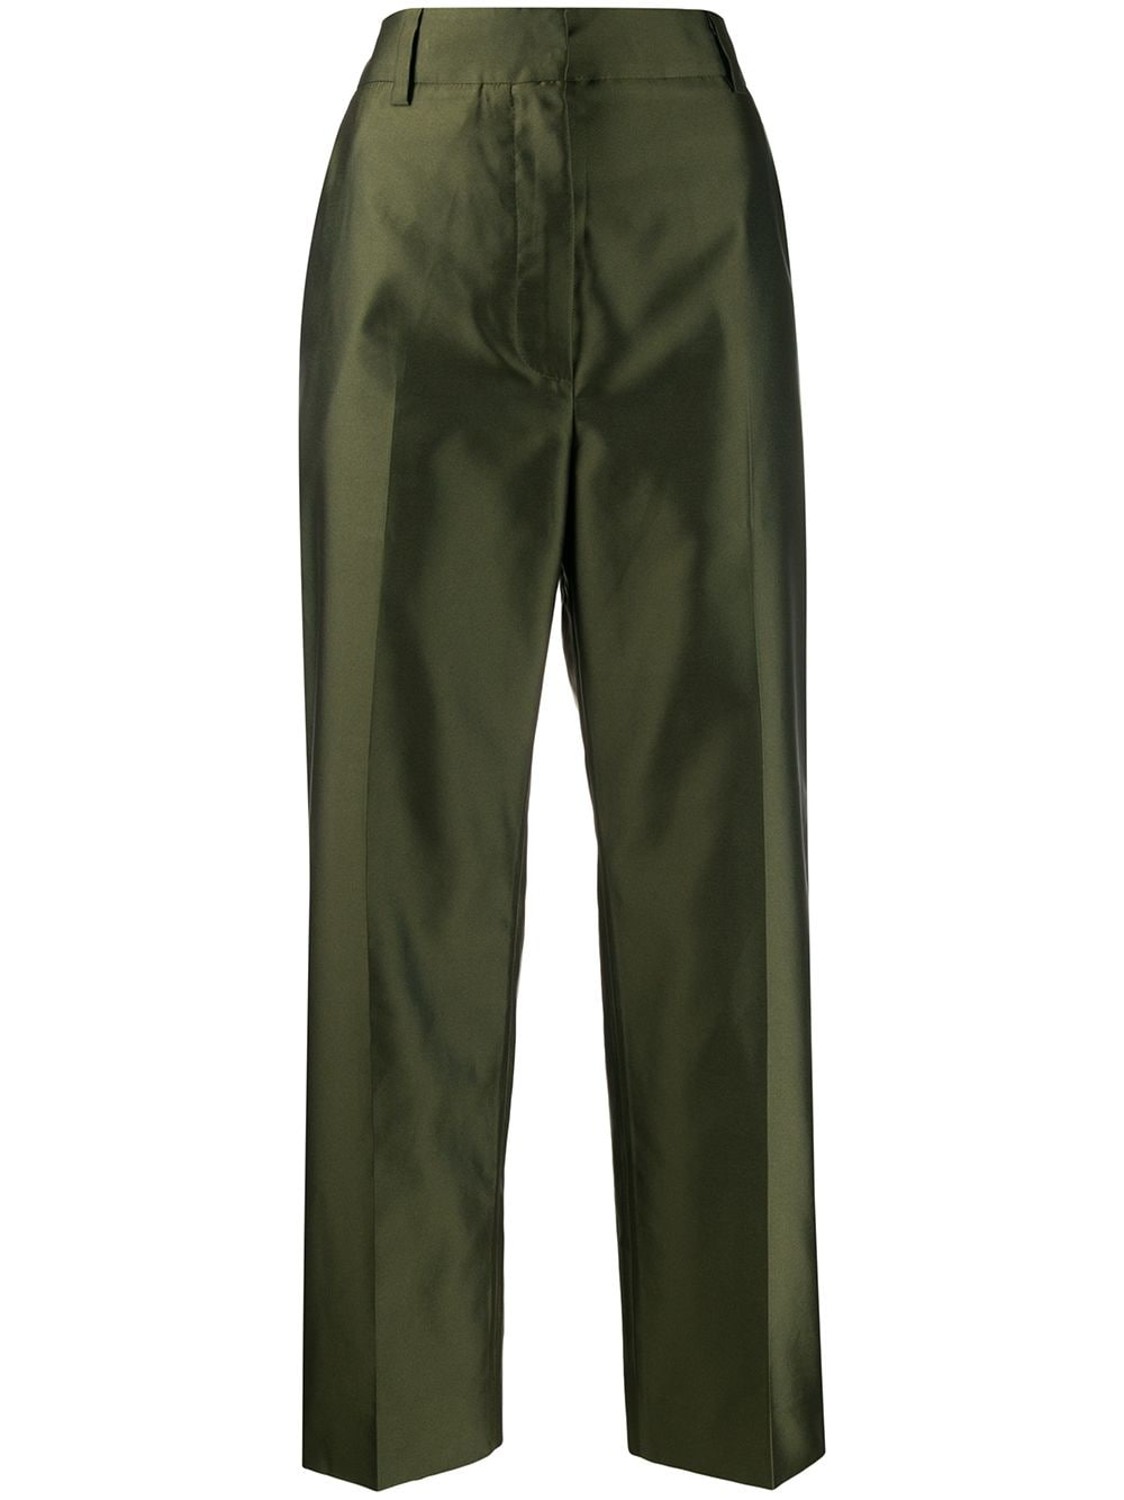 shop Marni Saldi Pantaloni: Pantalone Marni, in seta, verde, quattro tasche, lunghezza regolare, fit regolare.

Composizione: 100% seta. number 1633